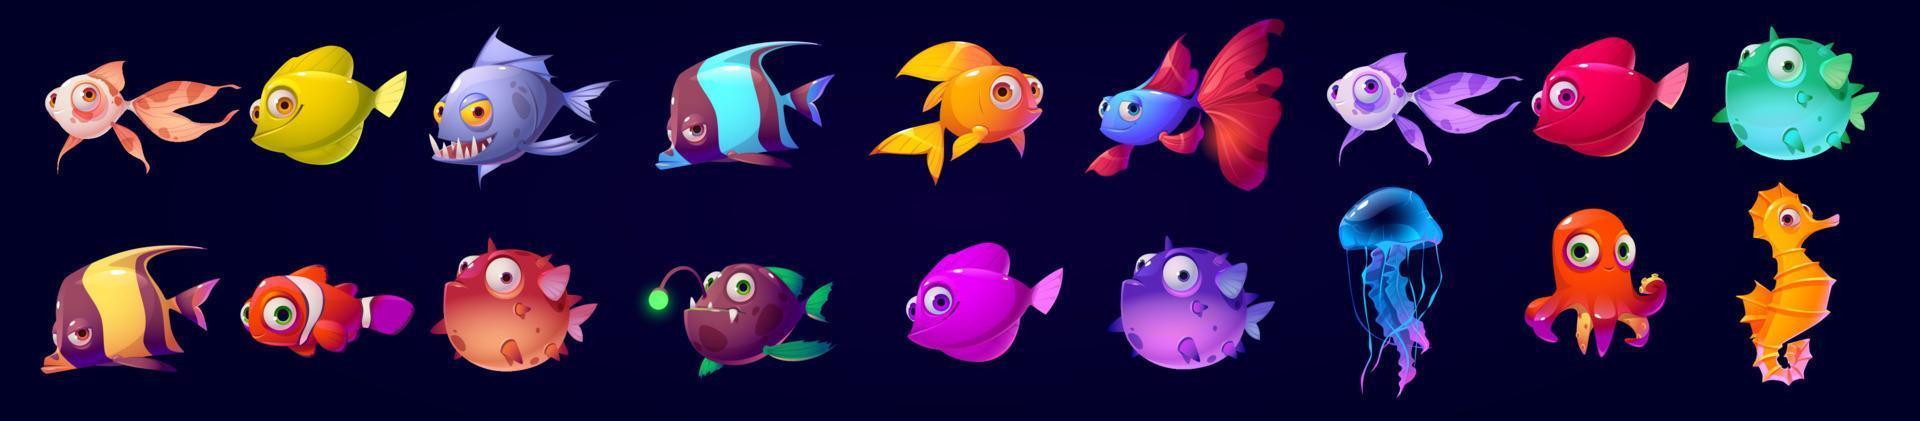 lindos animales marinos, peces, medusas, pulpos vector